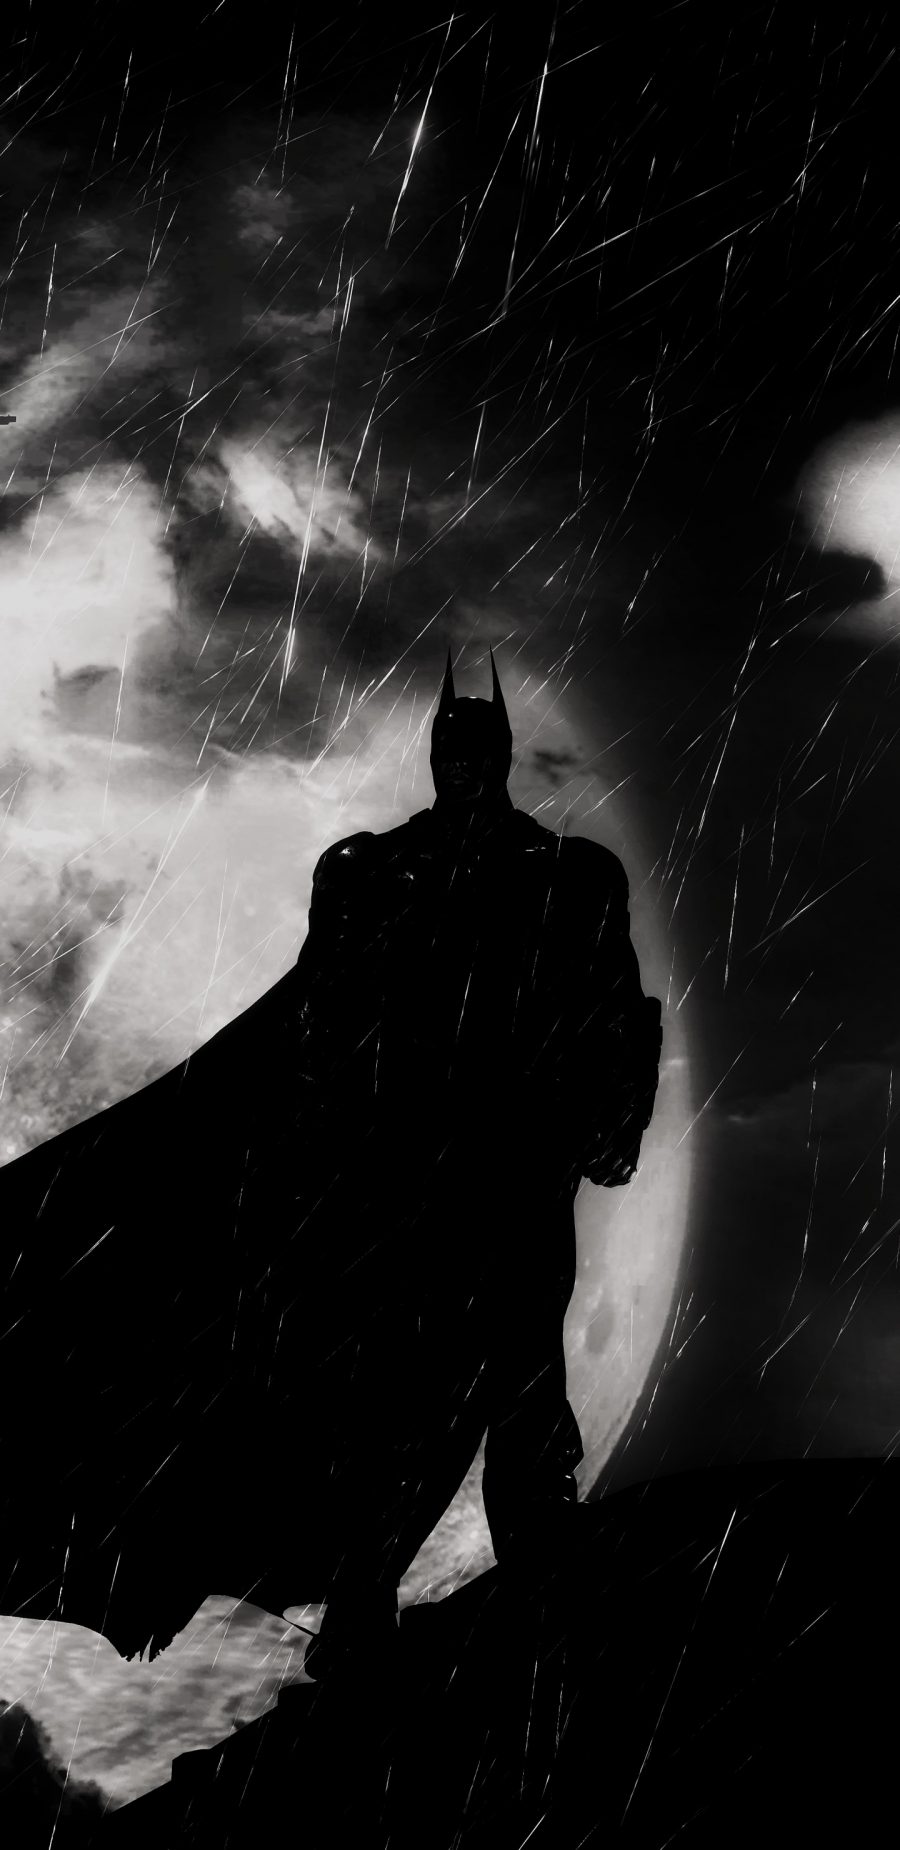 蝙蝠侠:阿甘骑士 batman: arkham knight游戏壁纸图片